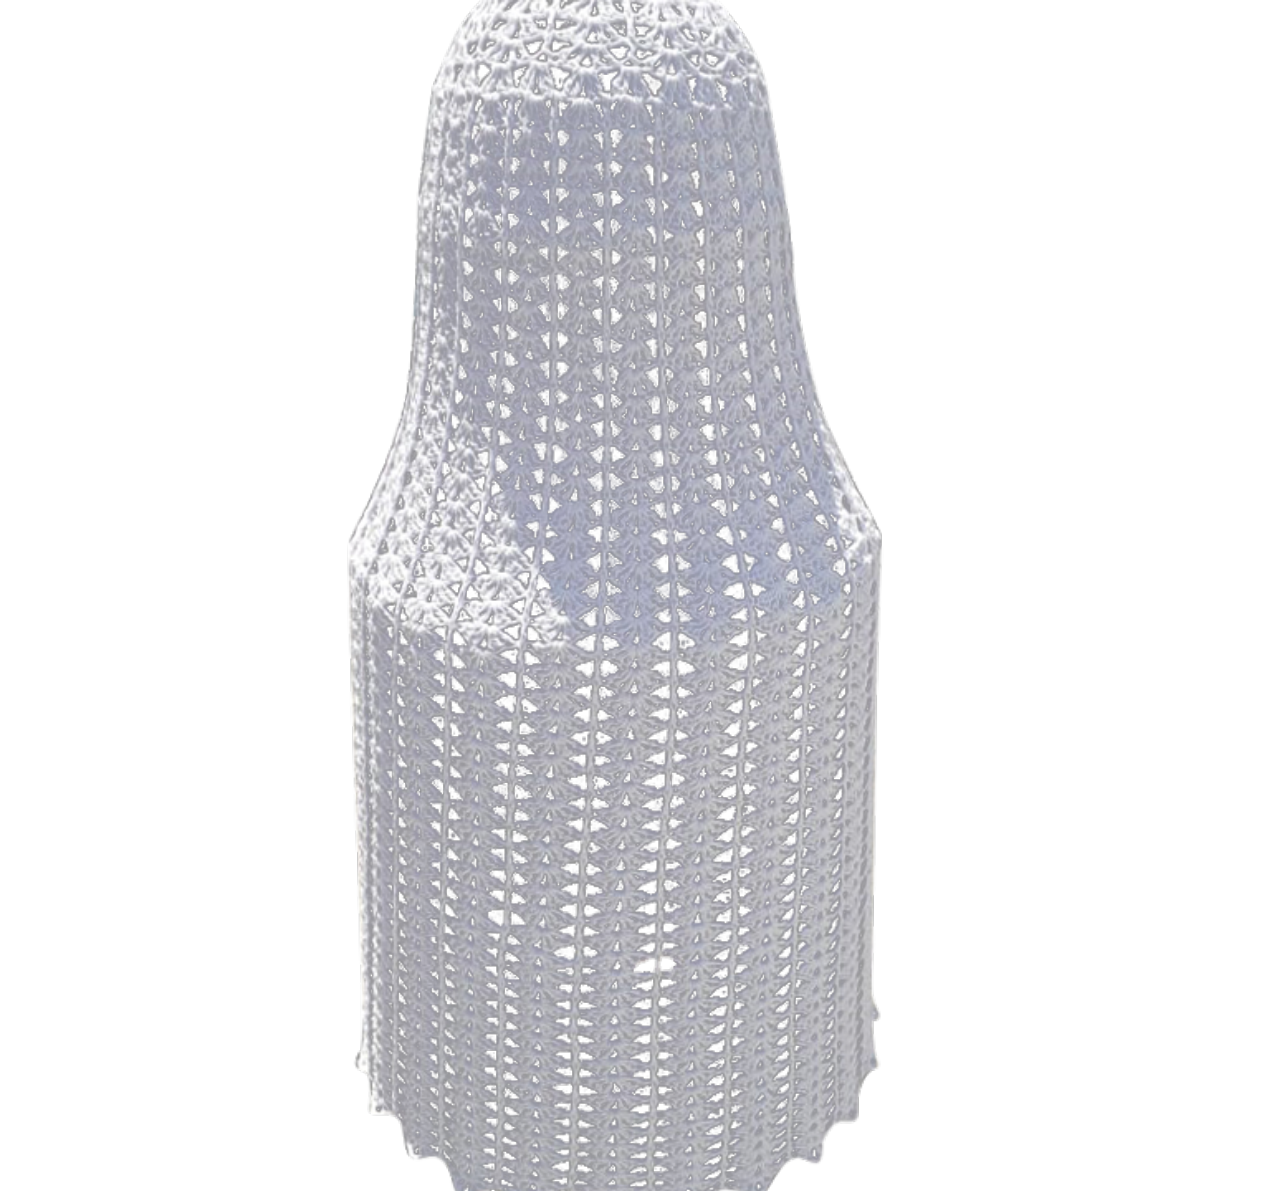 Luminária Saia Rendada, em crochê enrijecido com amido de milho, pela artesã Maria de Fátima. Foto: Divulgação